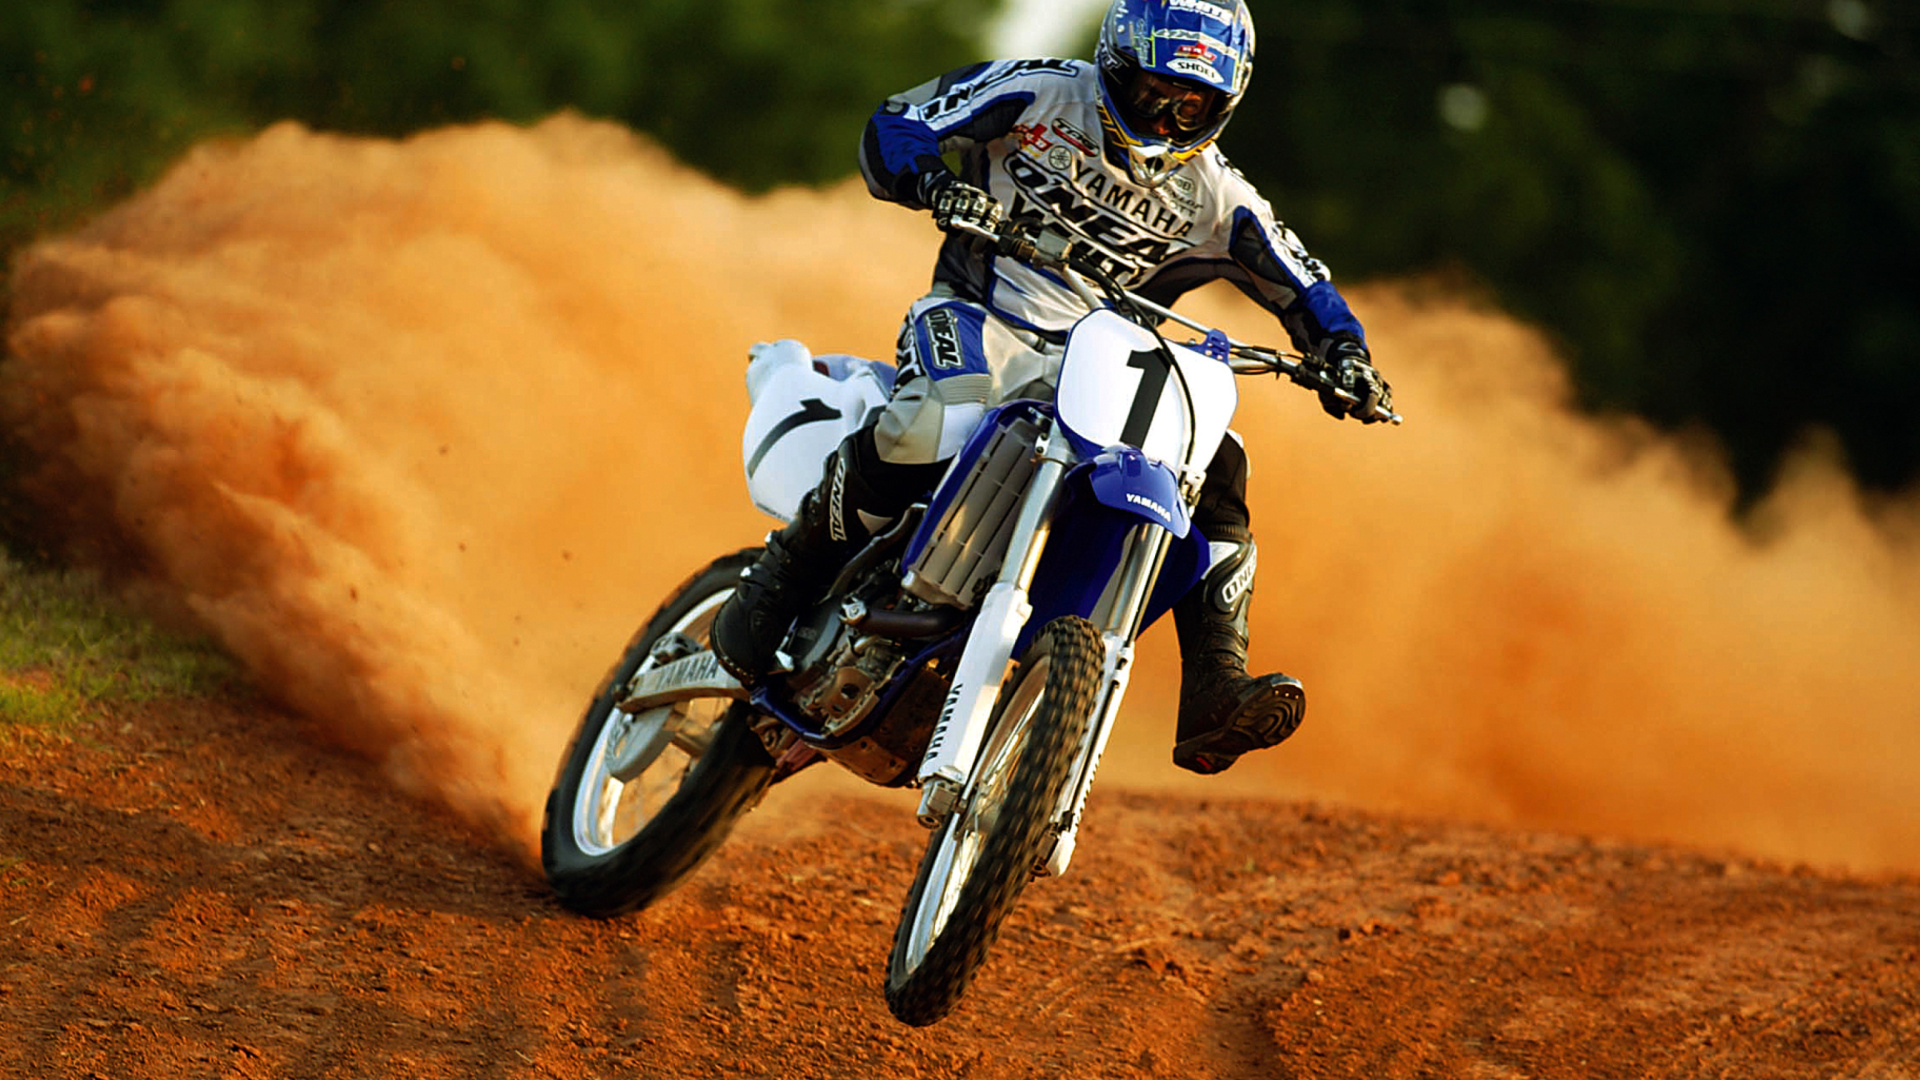 Motocross Screensavers Wallpapers - WallpaperSafari